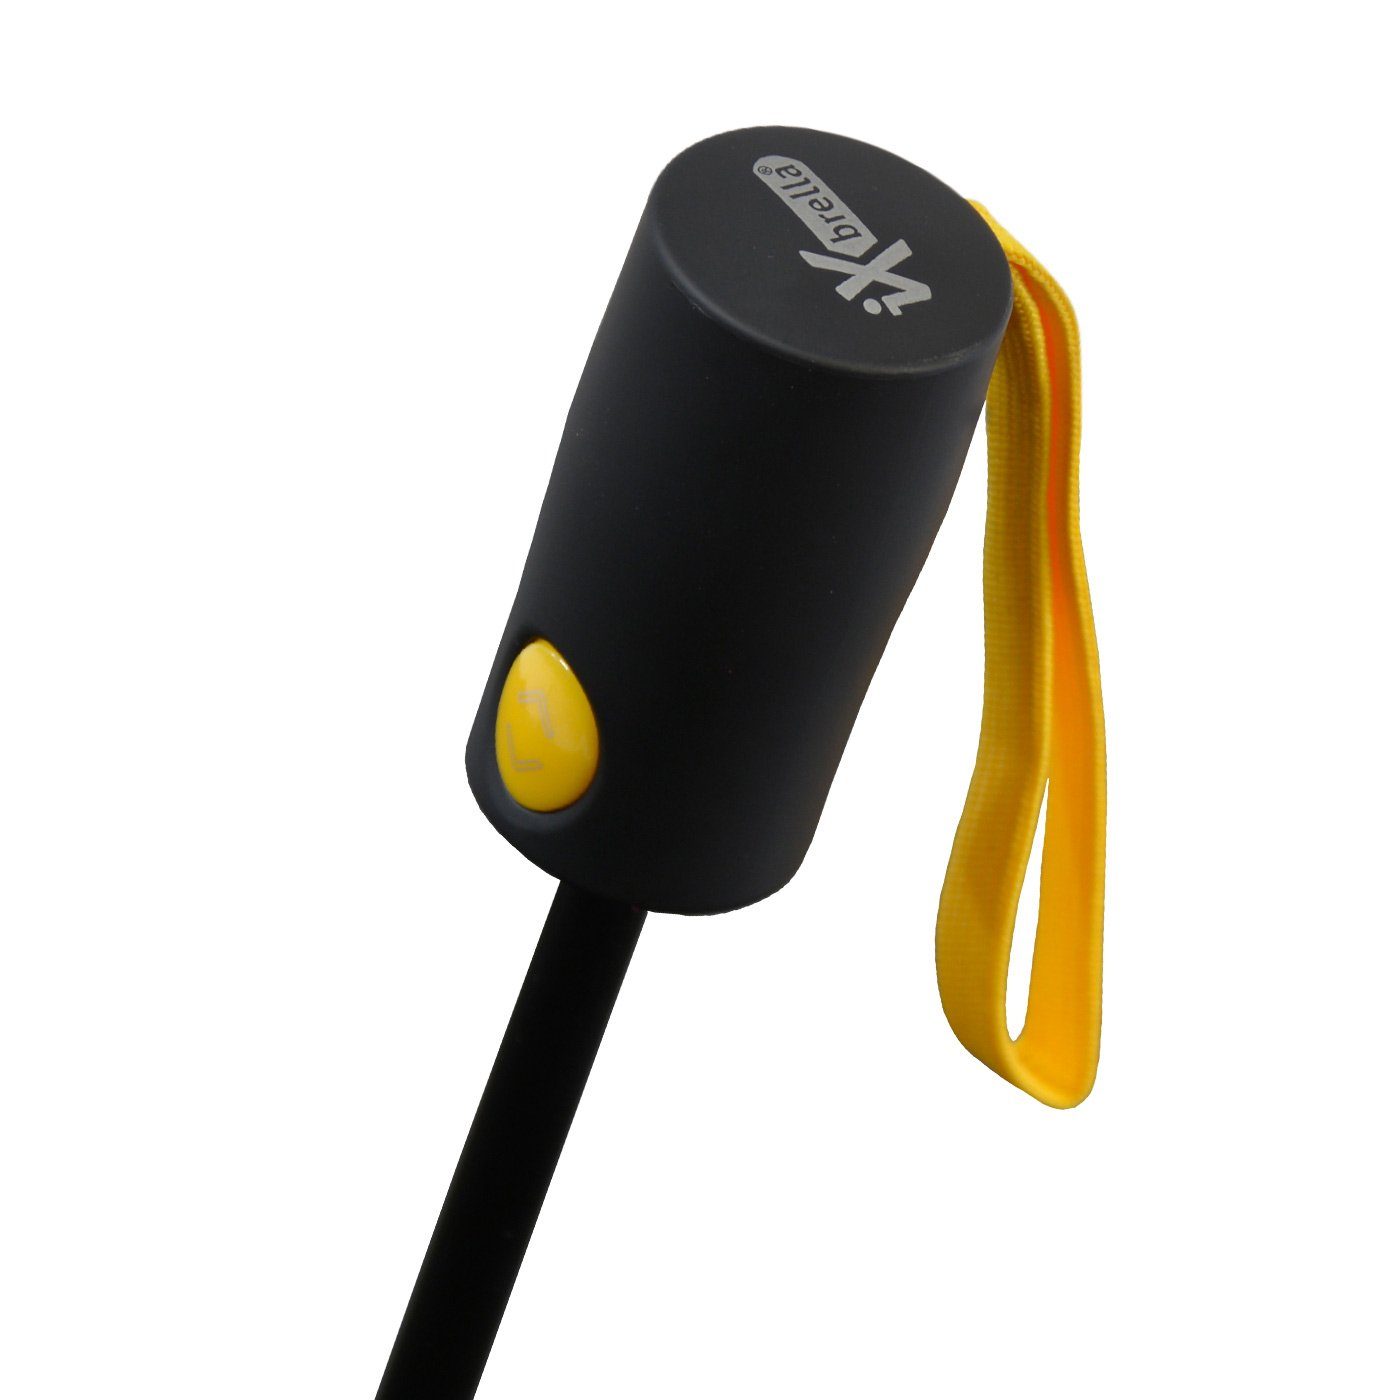 Fiberglas-Automatiksch, Taschenregenschirm bunten Speichen schwarz-gelb umgekehrt stabilen öffnender Reverse mit iX-brella